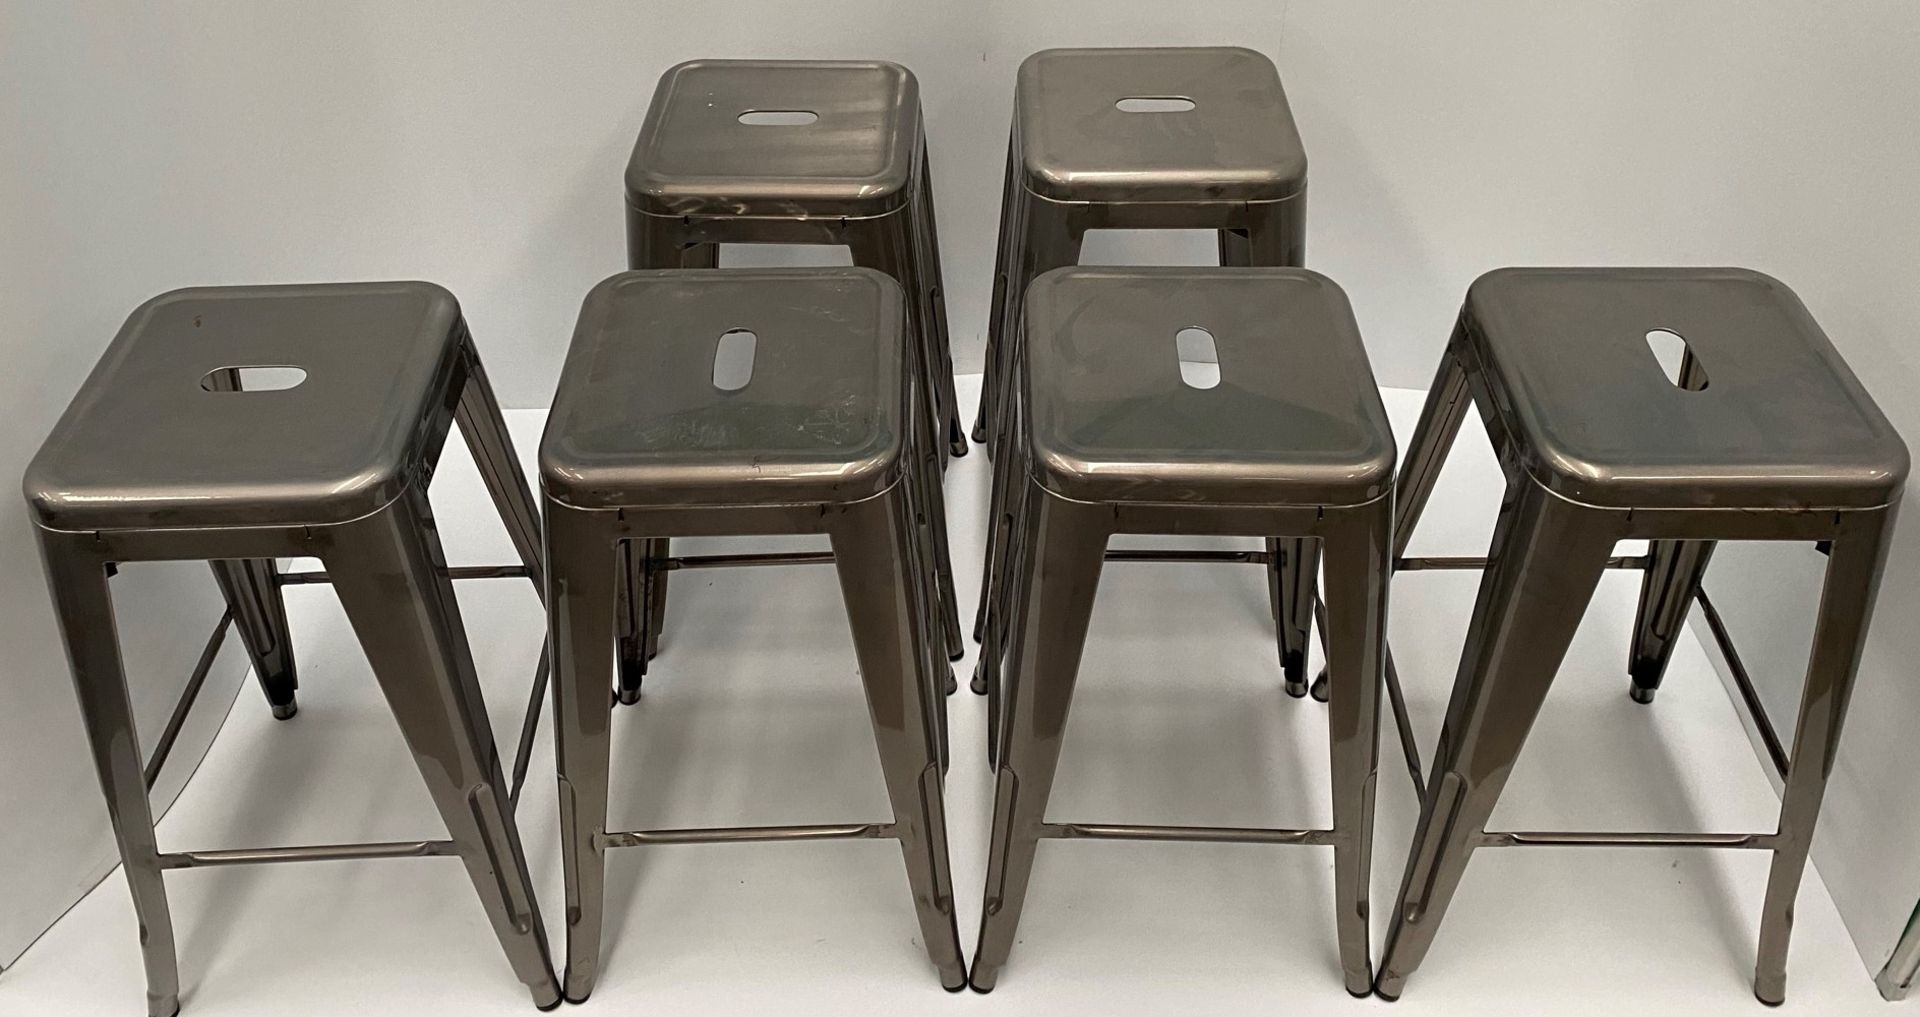 6 x Tolix metal high stools (660mm)